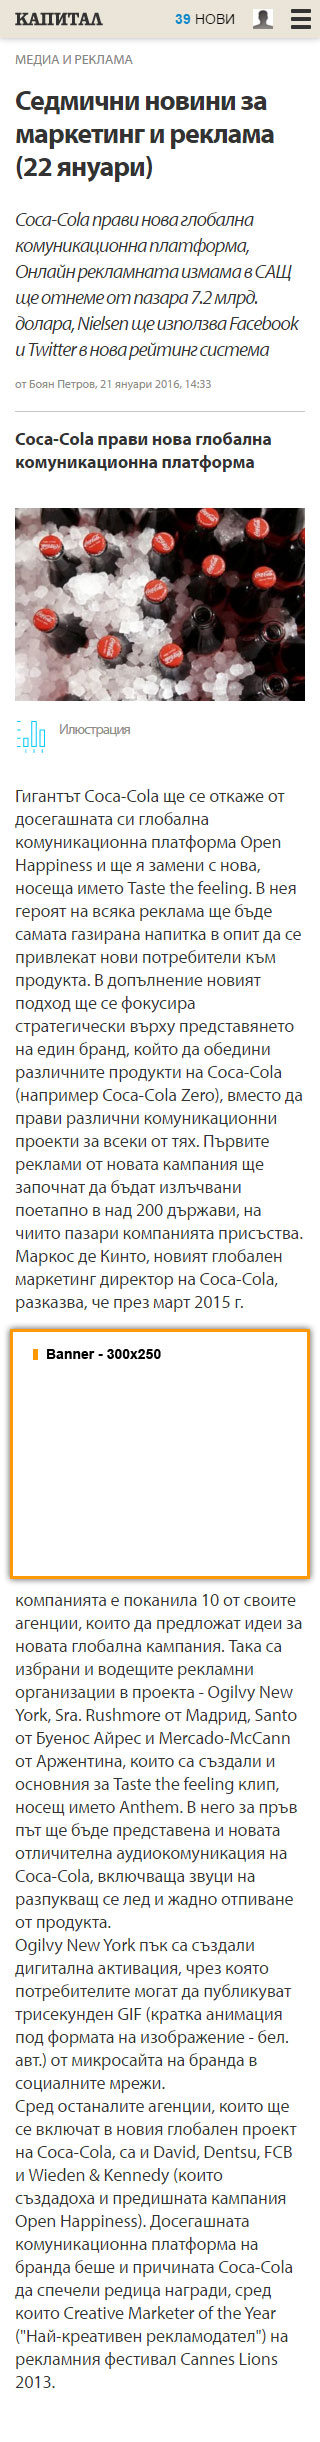 Цени за реклама в Capital.bg - от 27 декември 2011